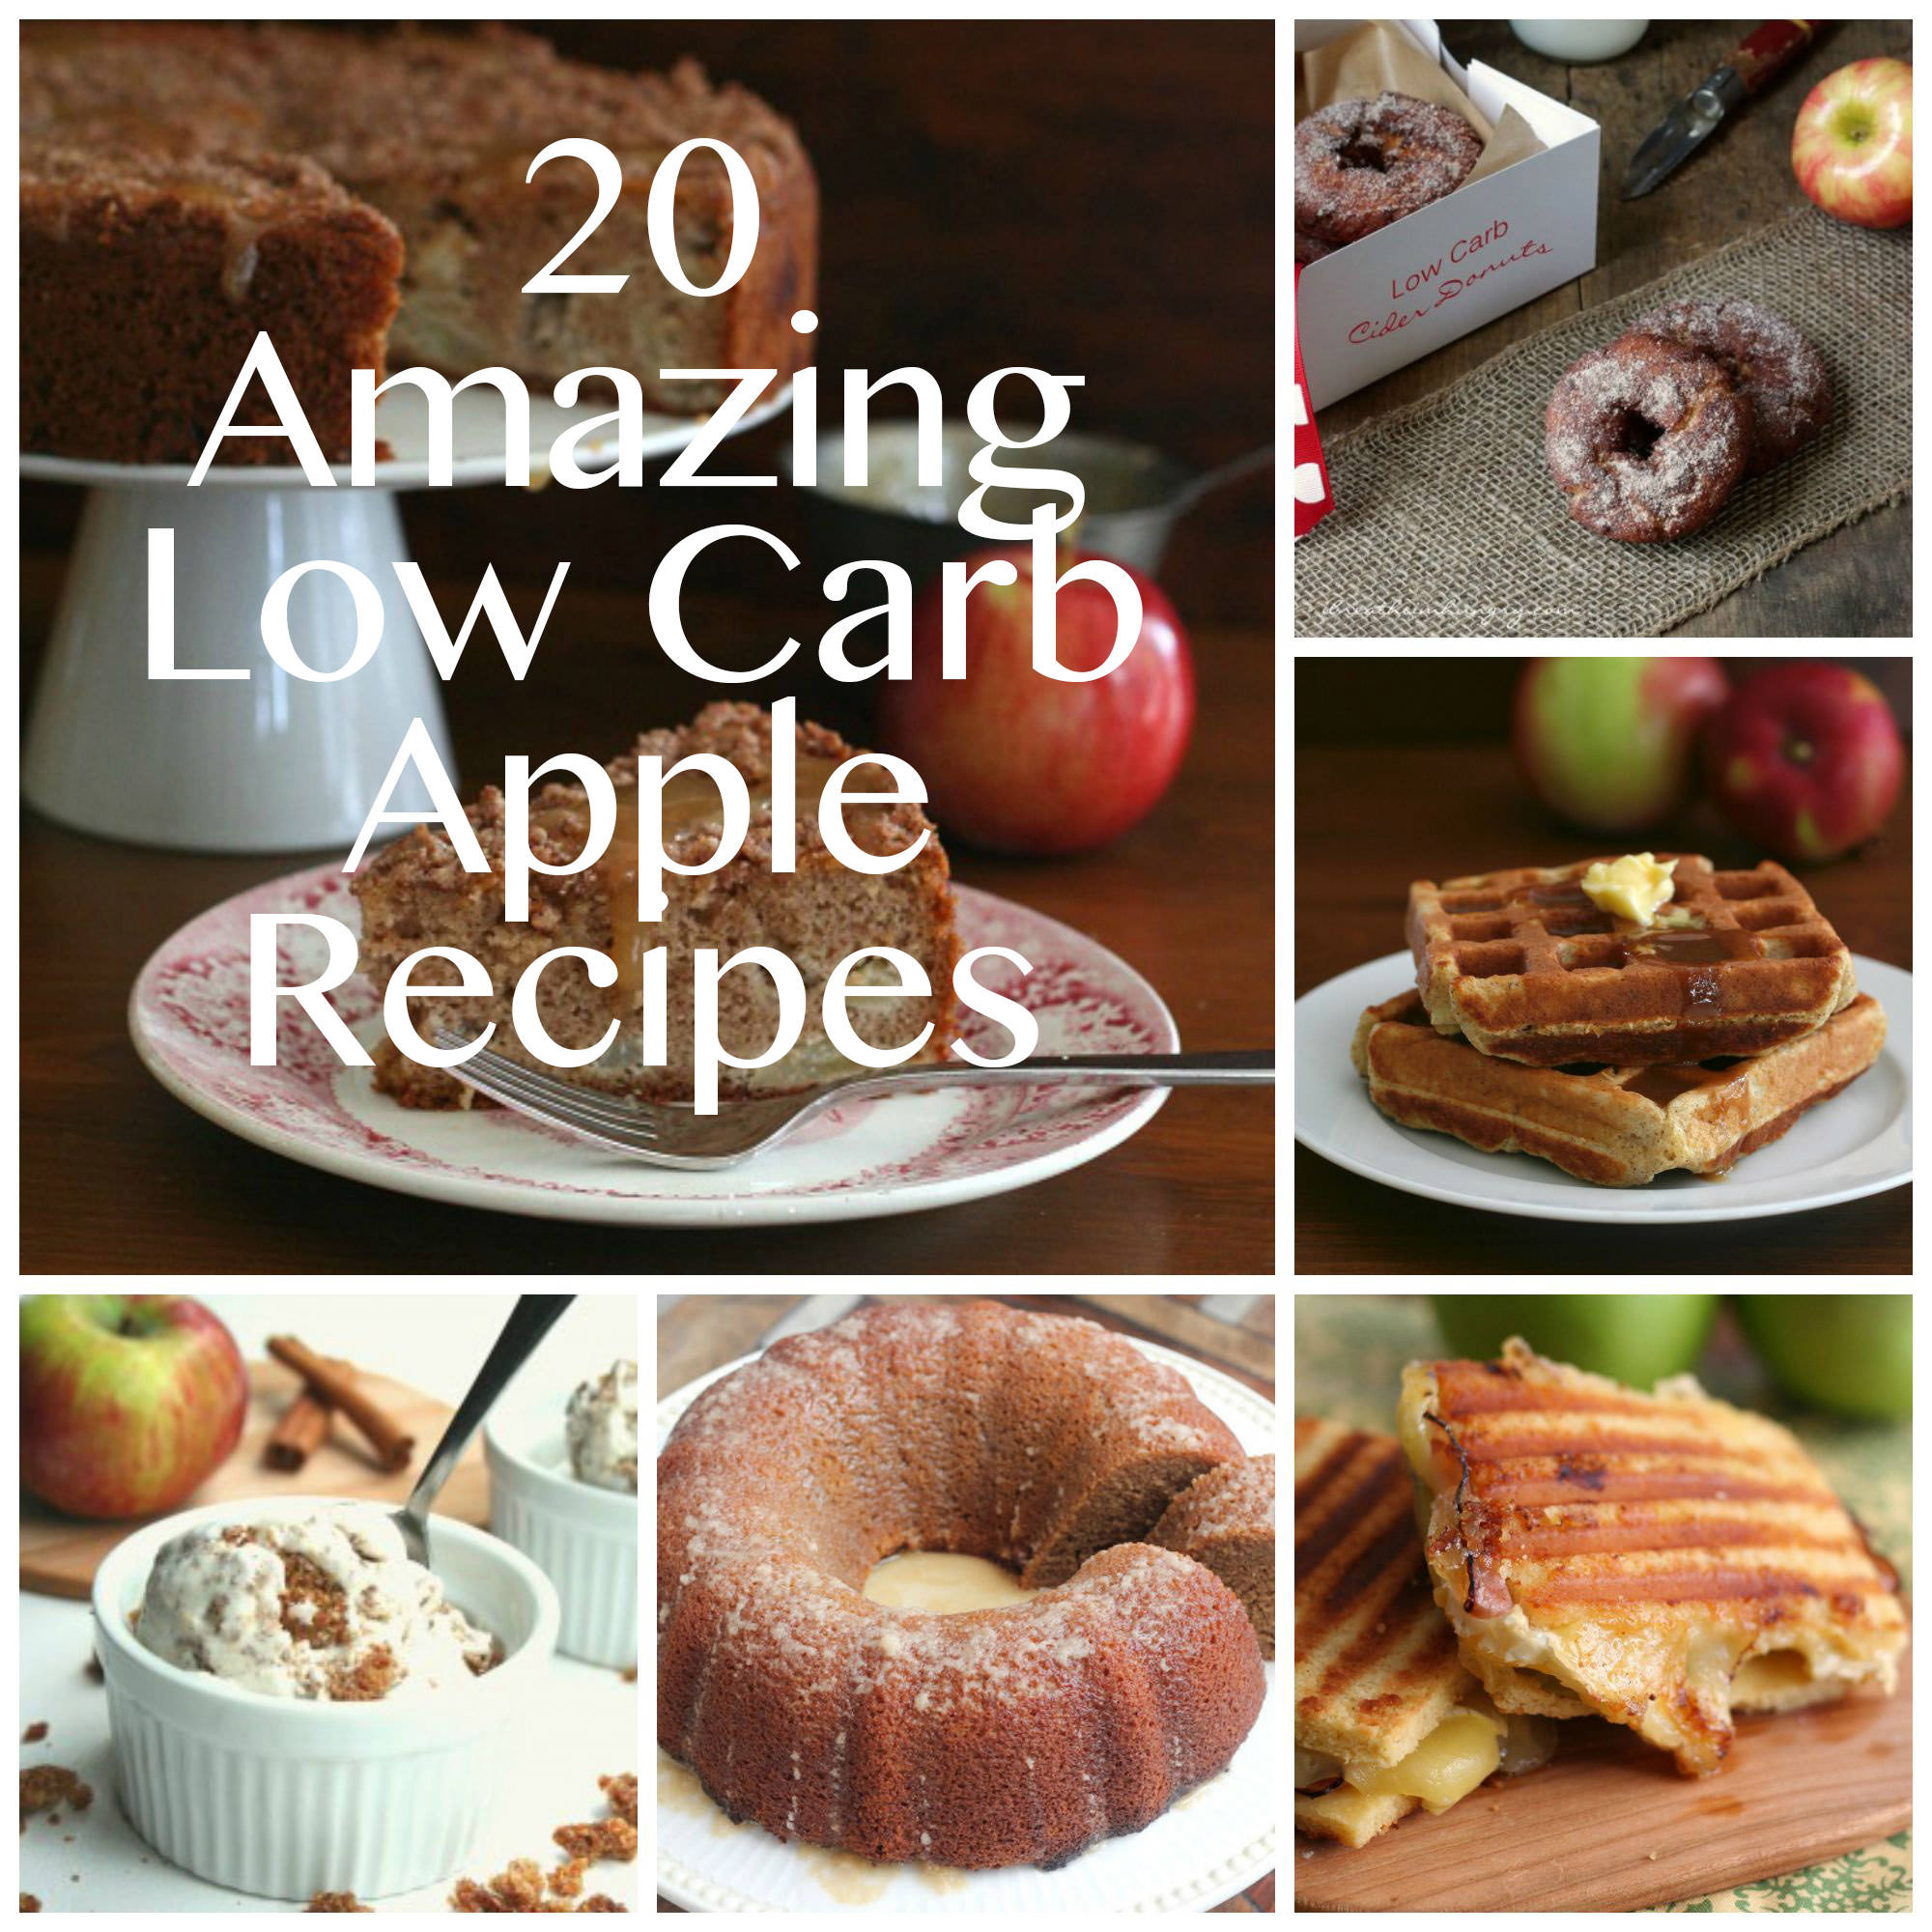 Low Carb Apple Recipes
 20 Low Carb Apple Recipes for Rosh Hashanah